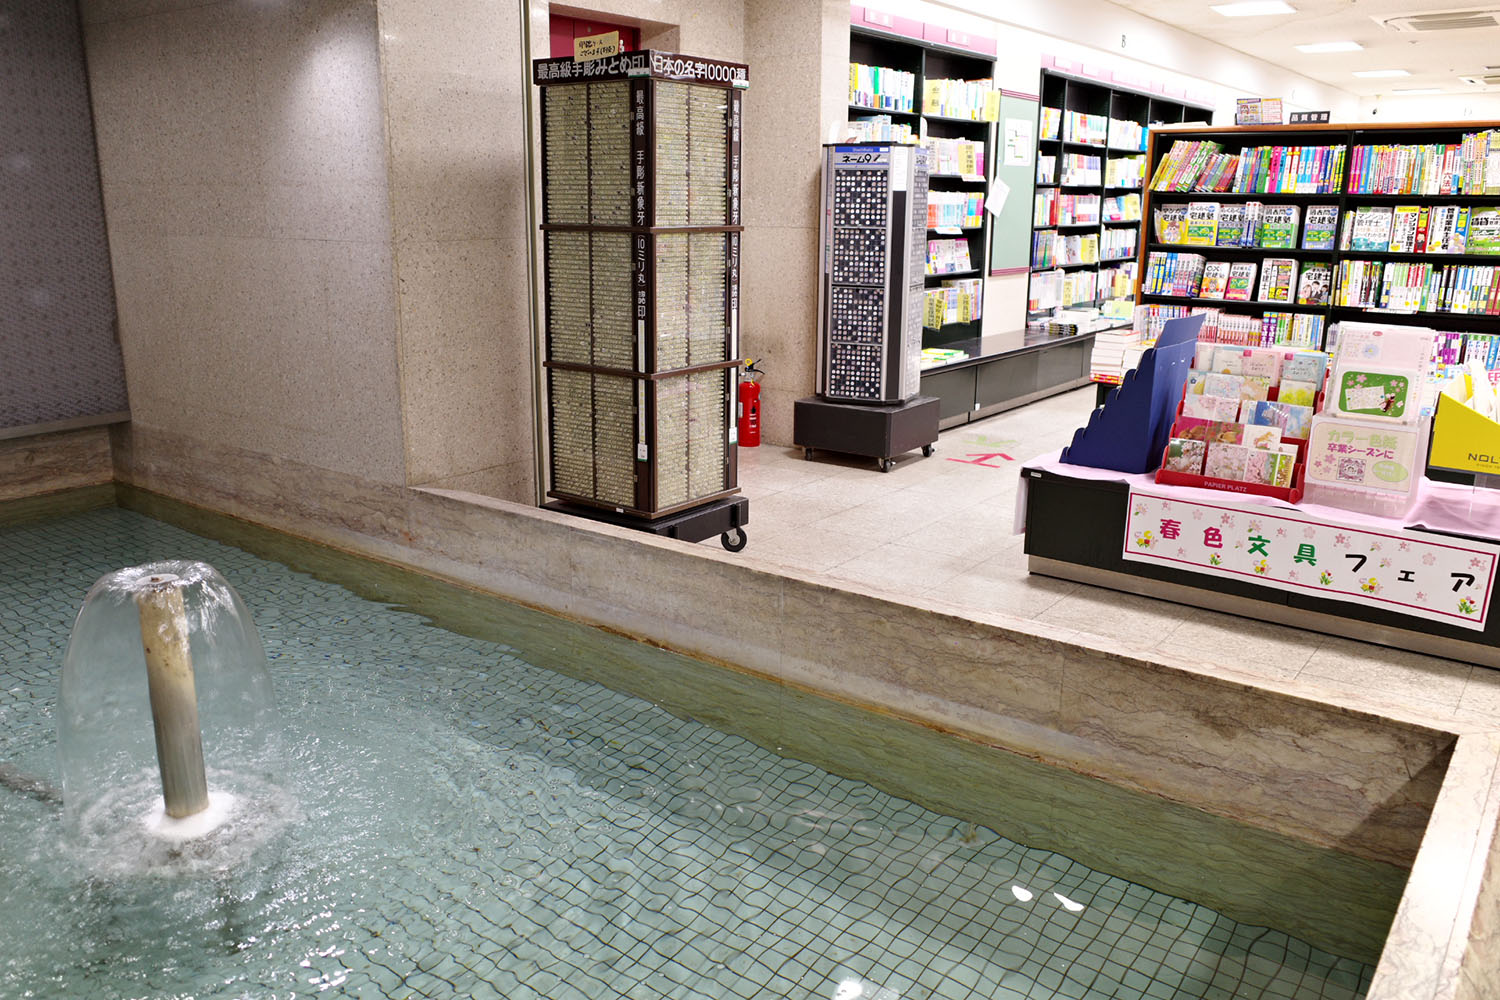 水の音が心地よい、地下にある「知恵の泉」。書店では珍しい光景だ。